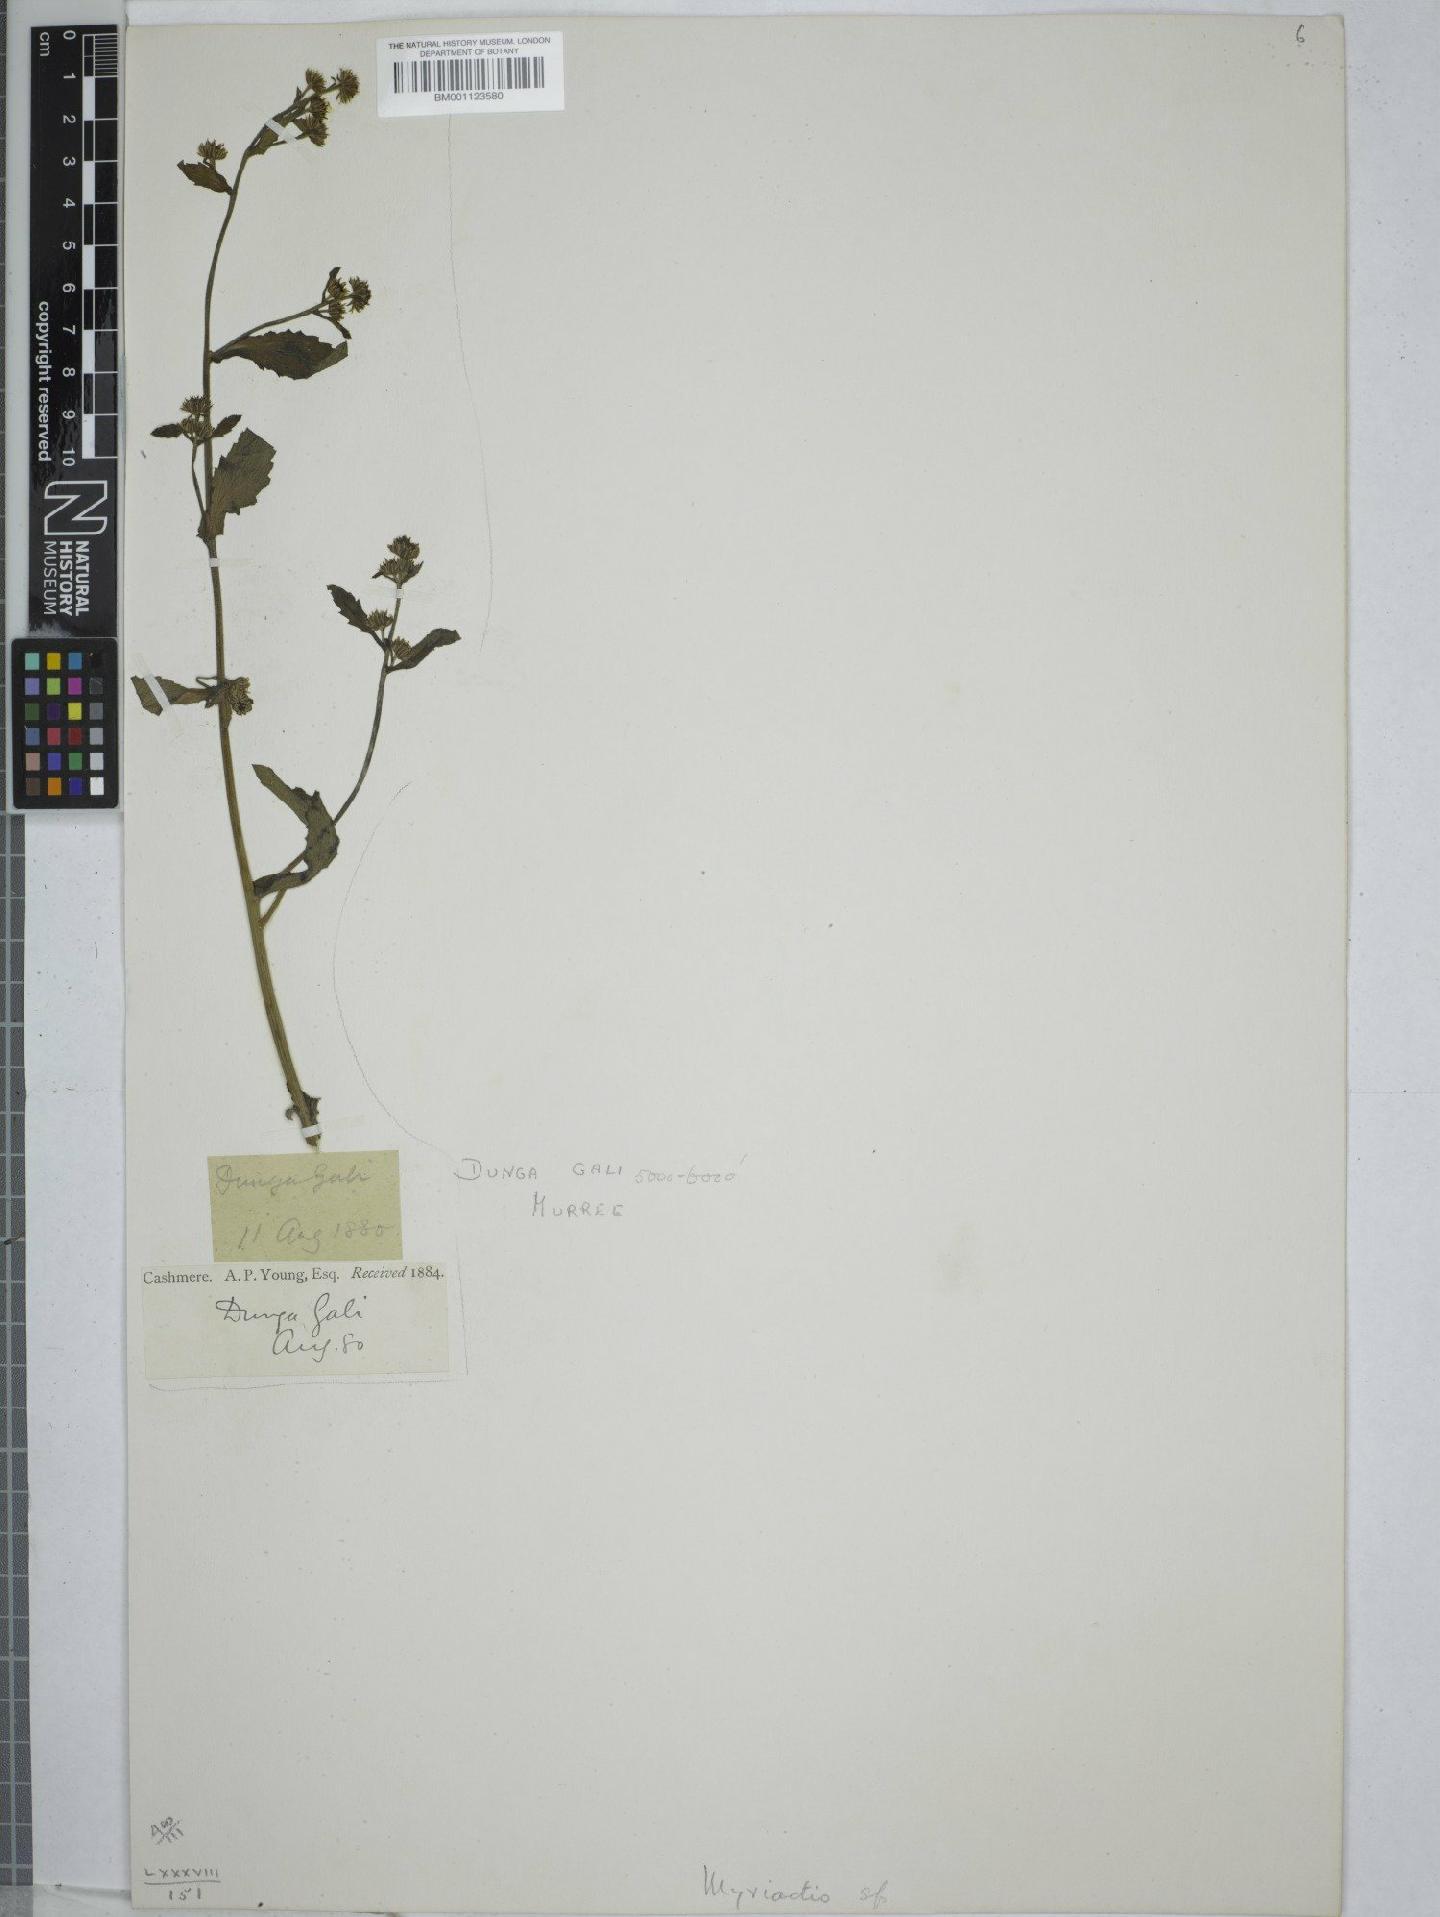 To NHMUK collection (Myriactis nepalensis Less; NHMUK:ecatalogue:9150134)